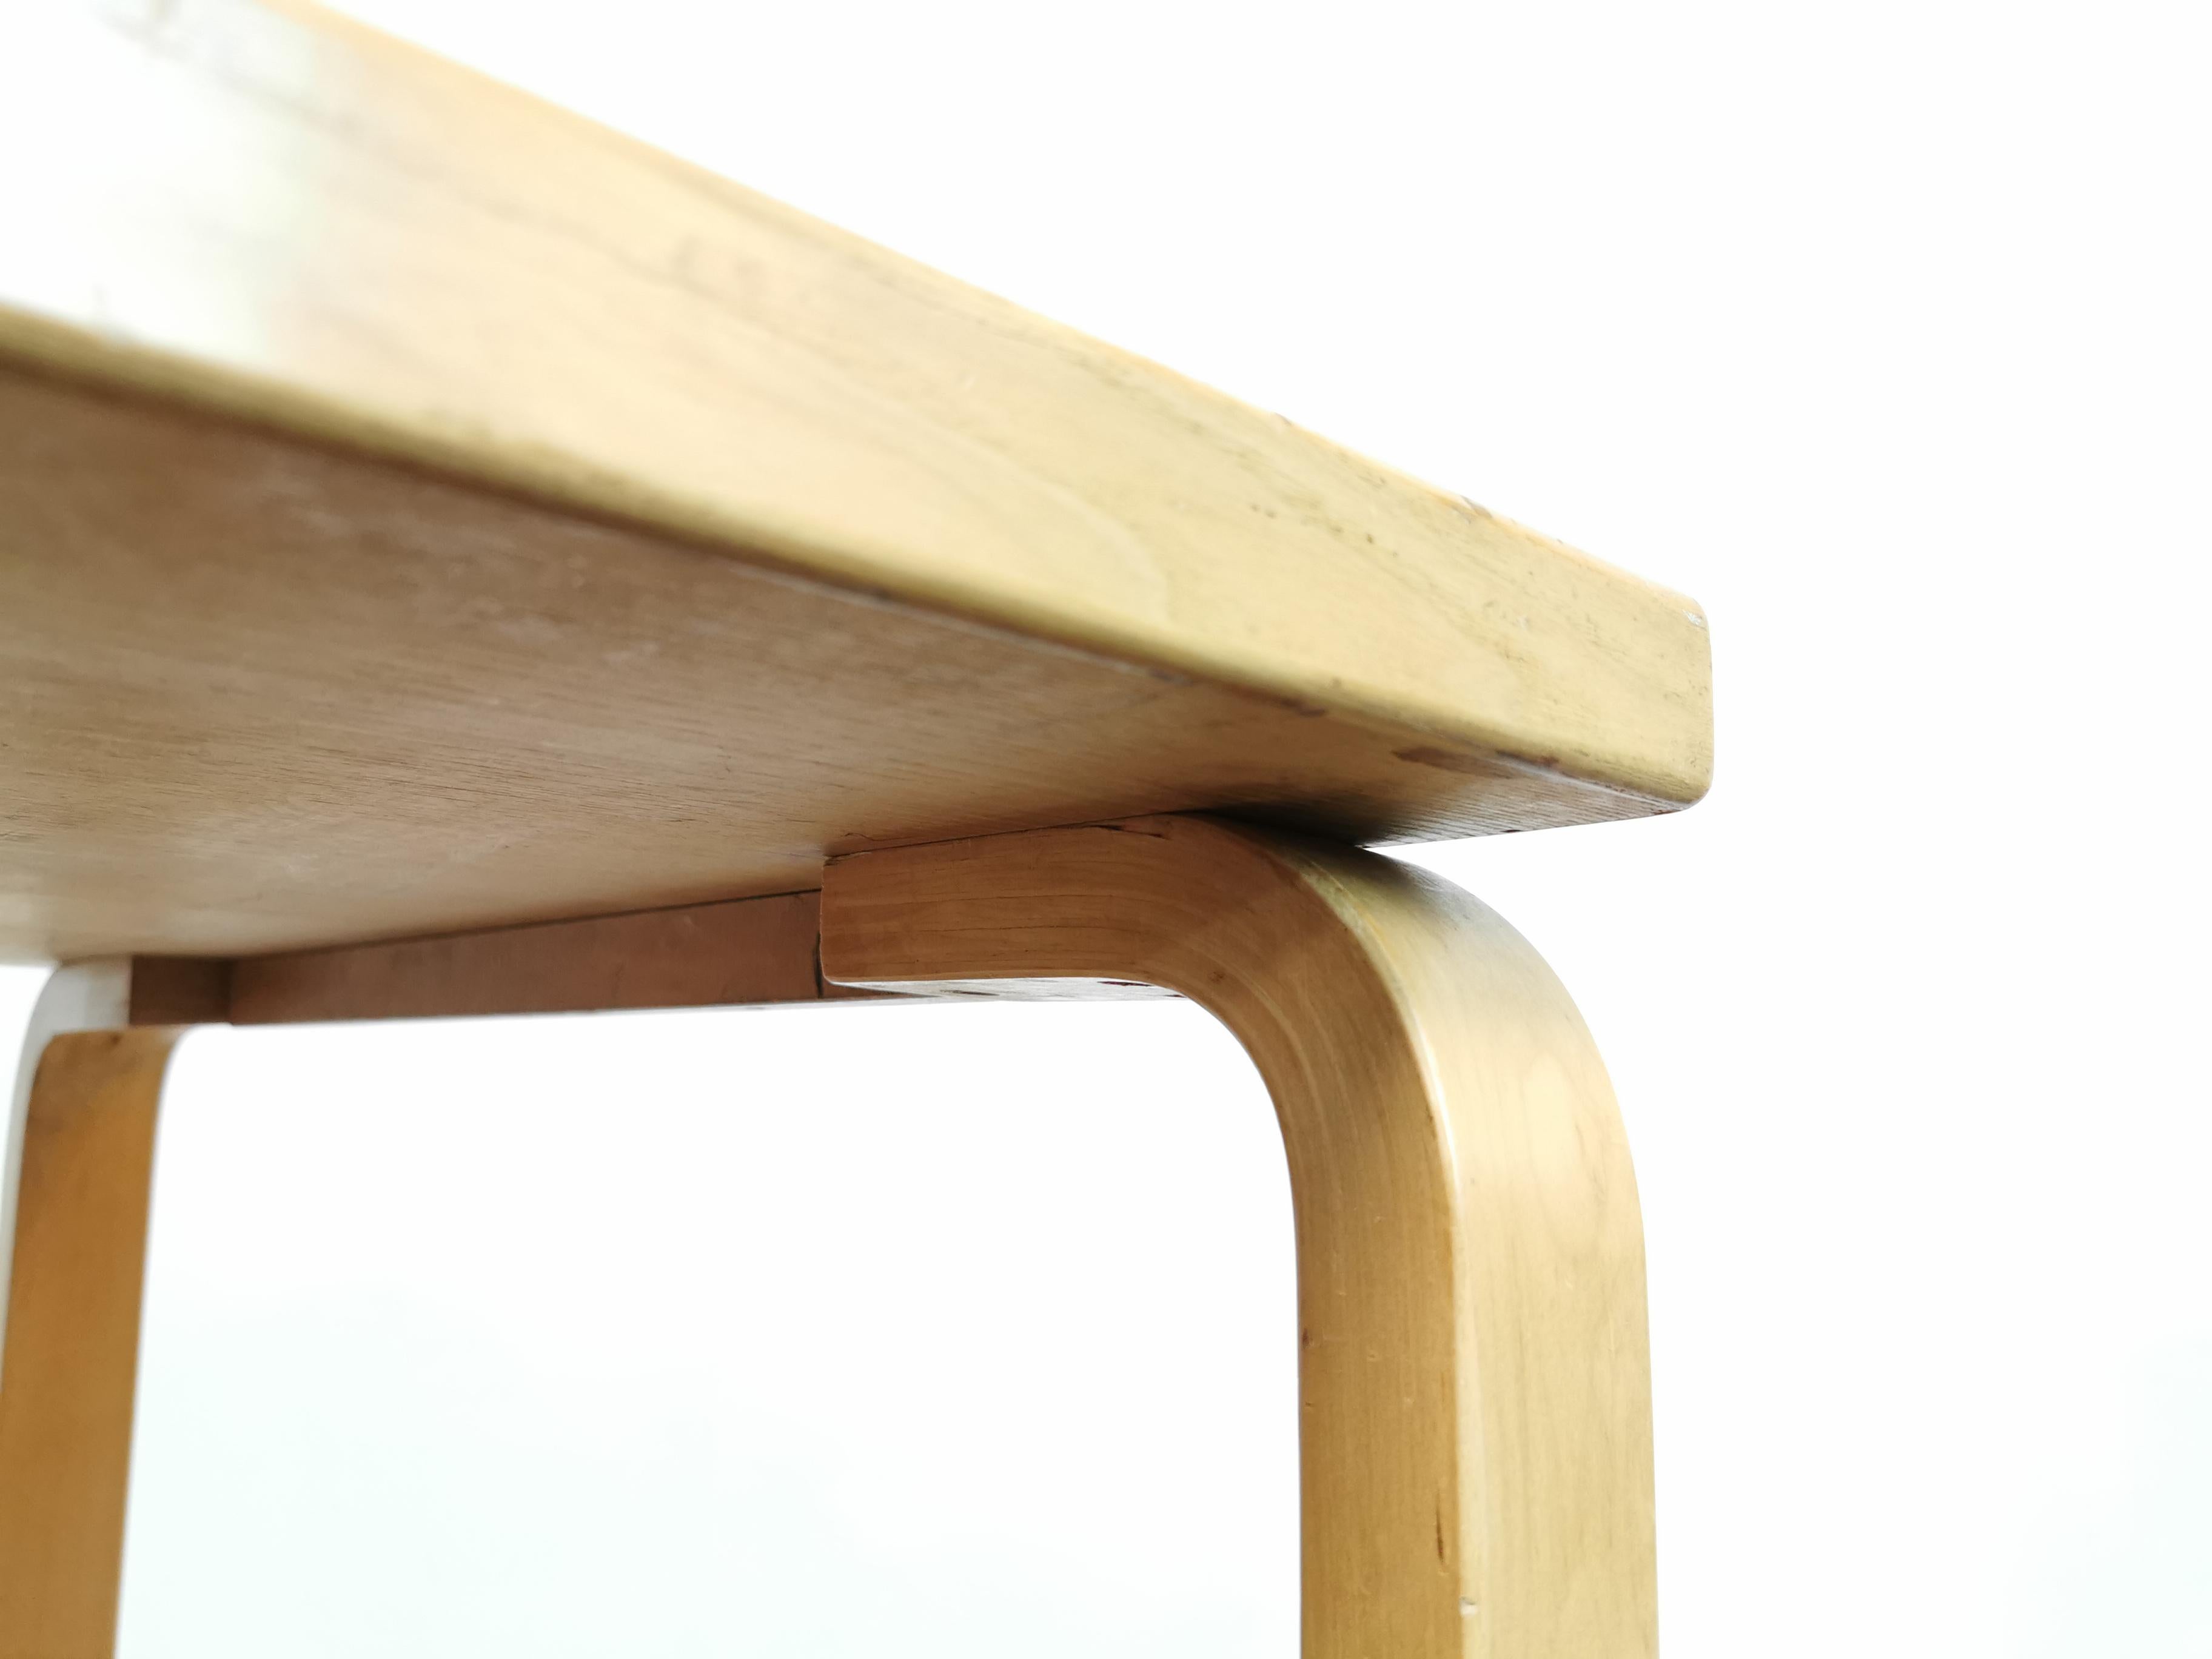 20th Century Midcentury Alvar Aalto for Artek Birchwood Square Table Desk